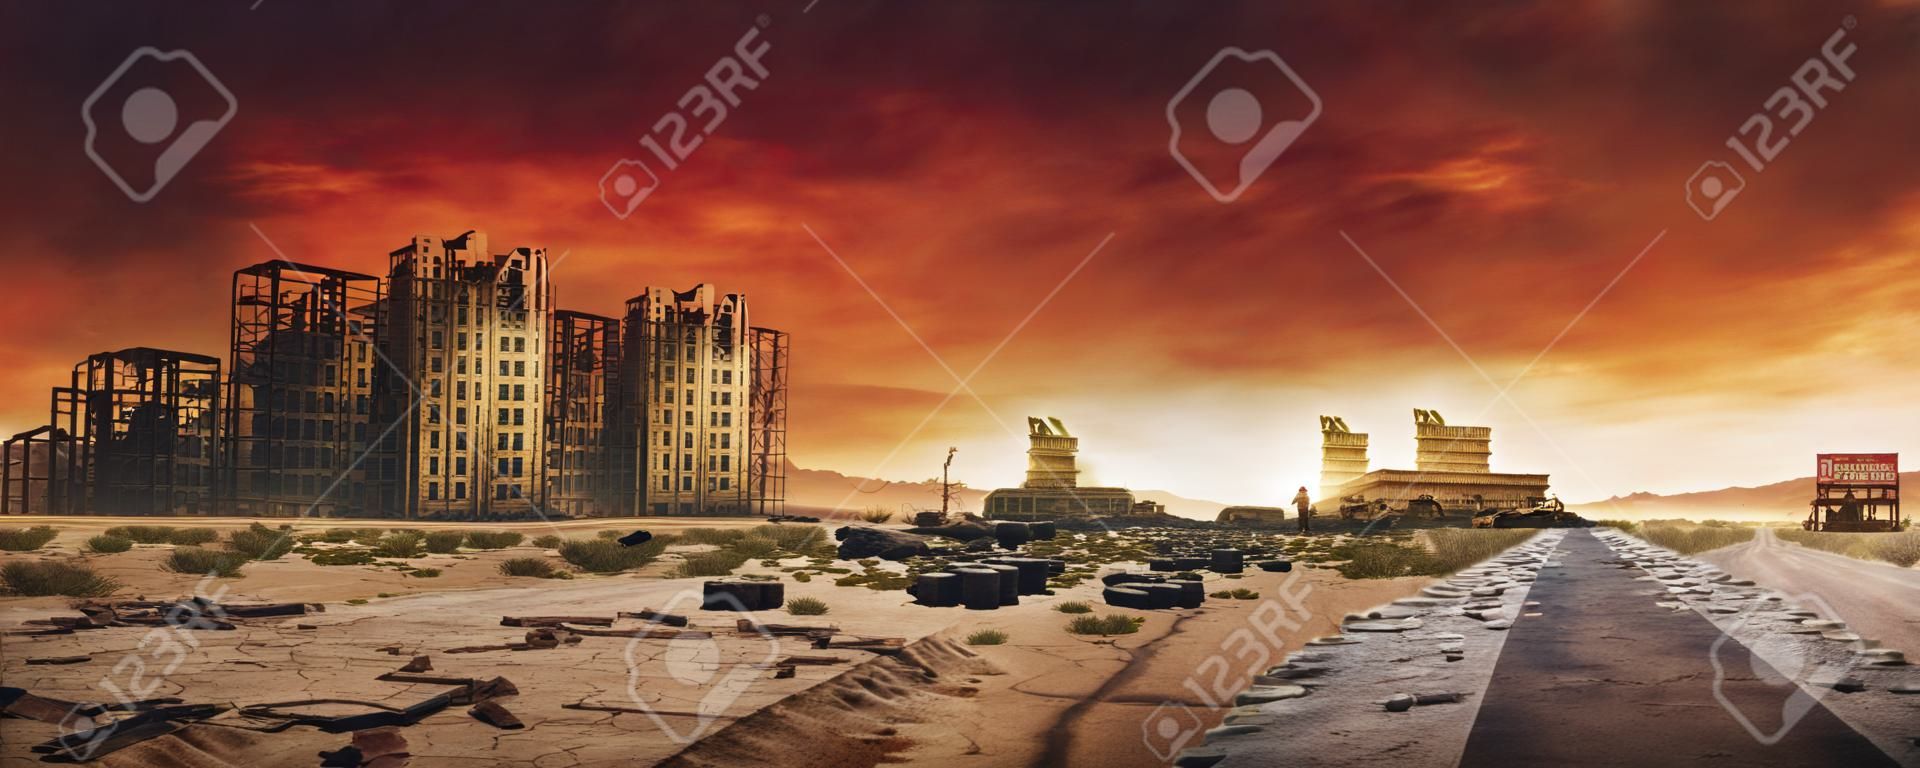 Imagem de fundo pós-apocalíptica da cidade deserta com buidings abandonados e destruídos, estrada rachada e sinal.